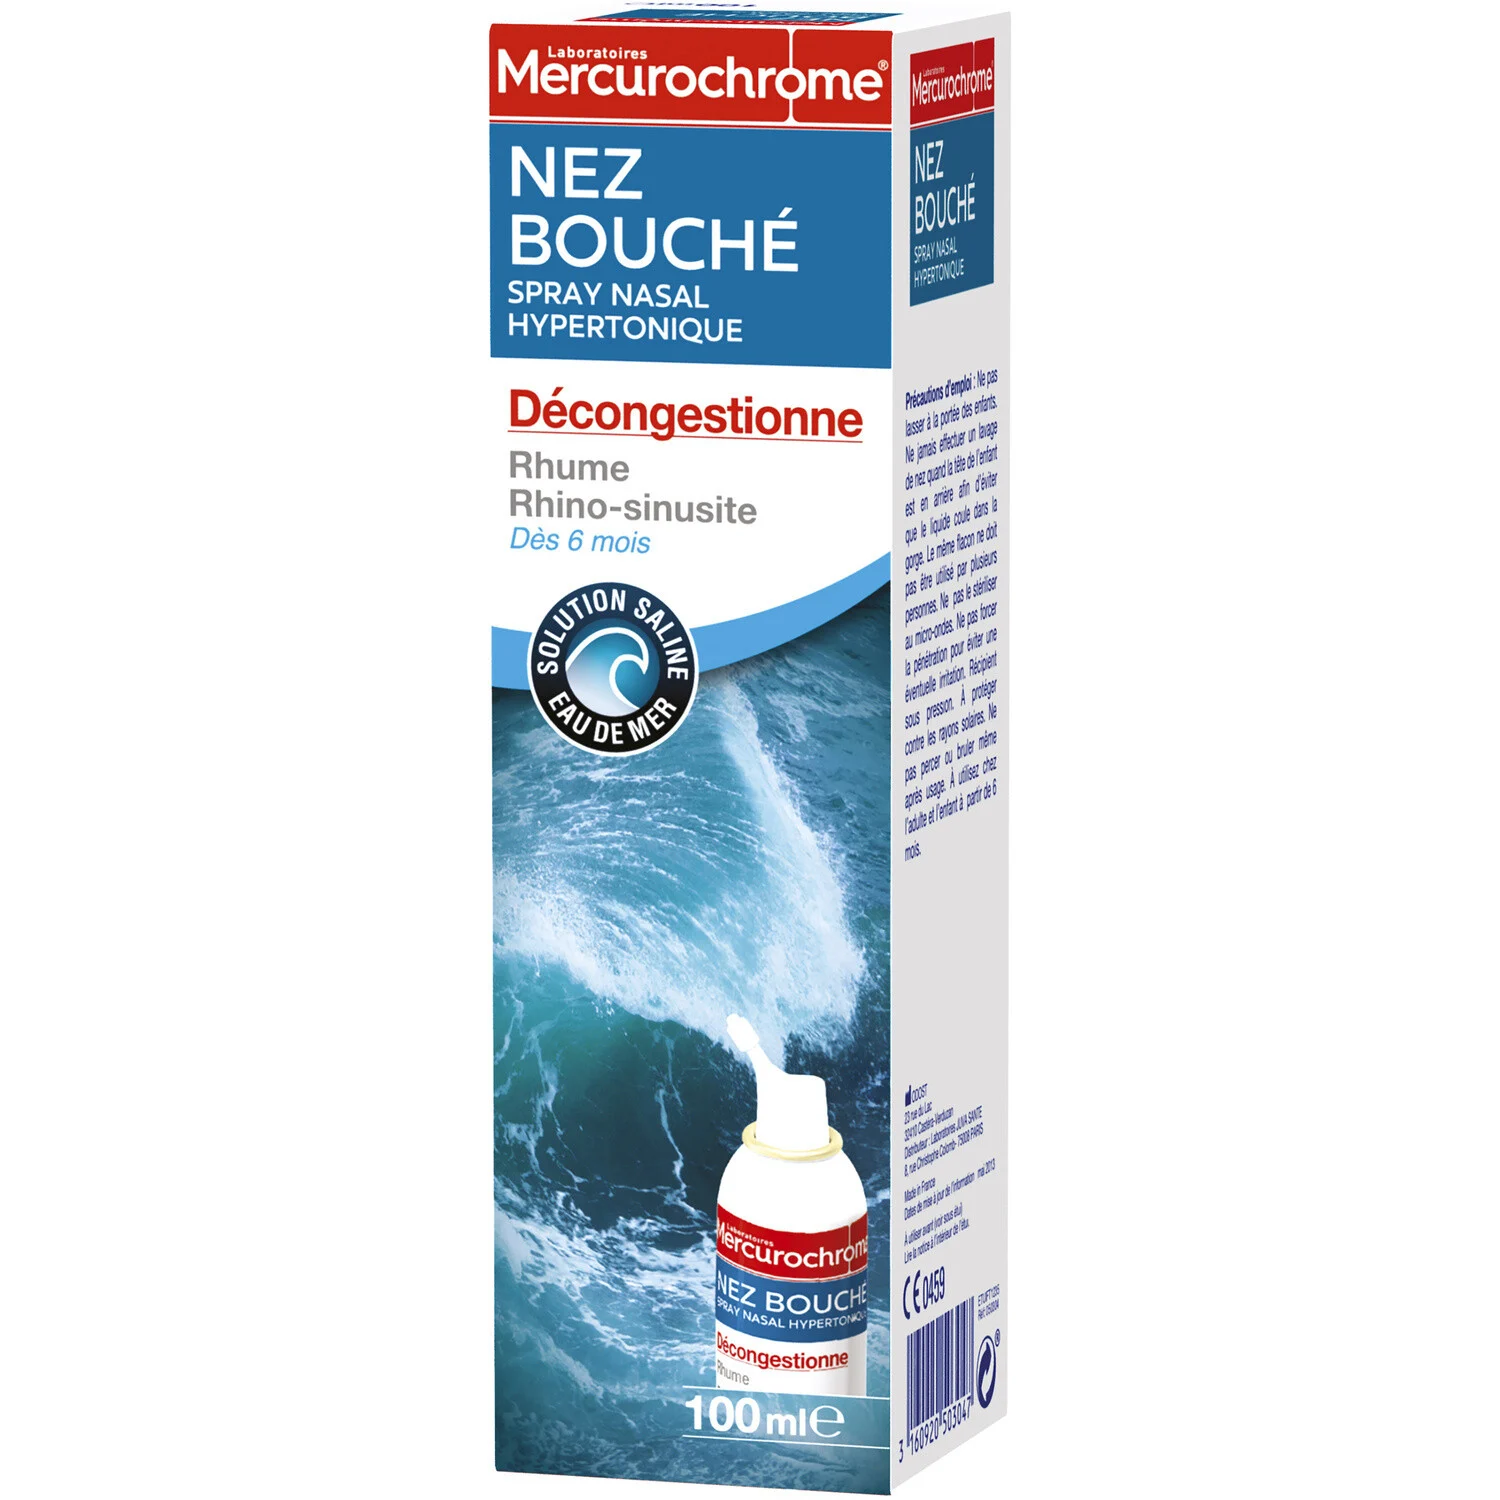 Spray Nasal Hypertonique 100ml - Mercurochrome